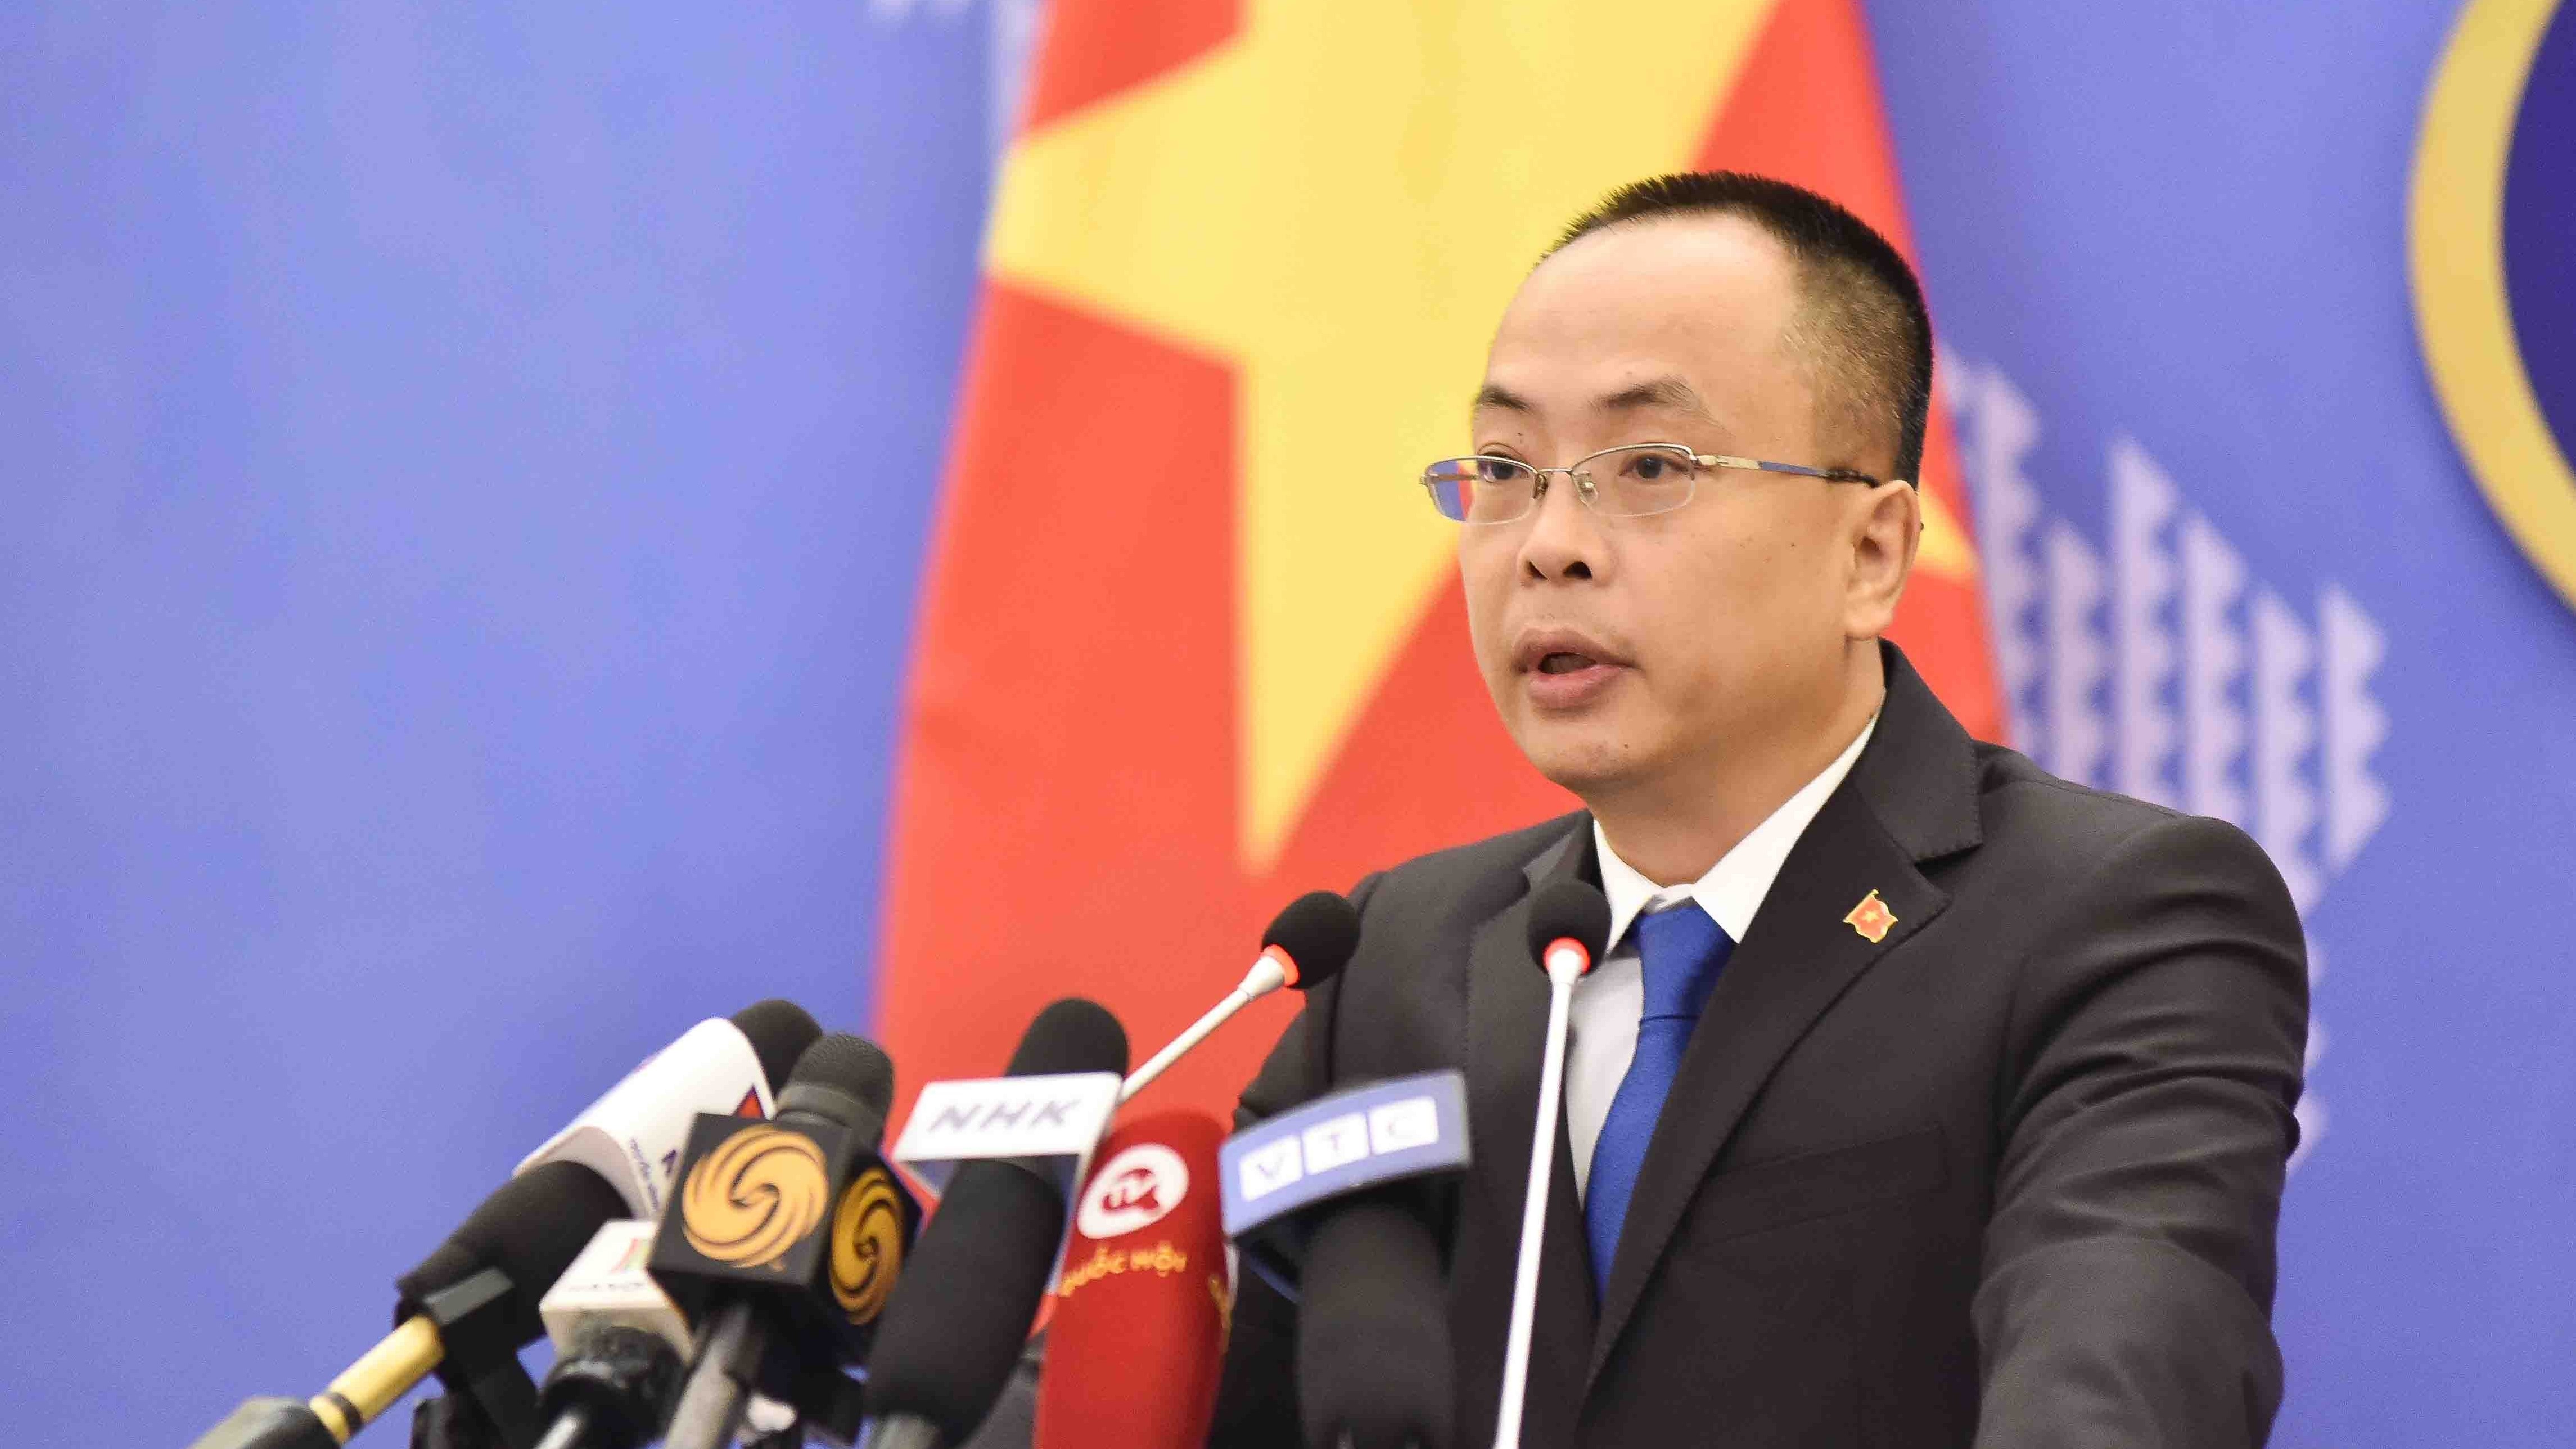 Phản ứng của Việt Nam về các hành vi vi phạm chủ quyền tại quần đảo Hoàng Sa